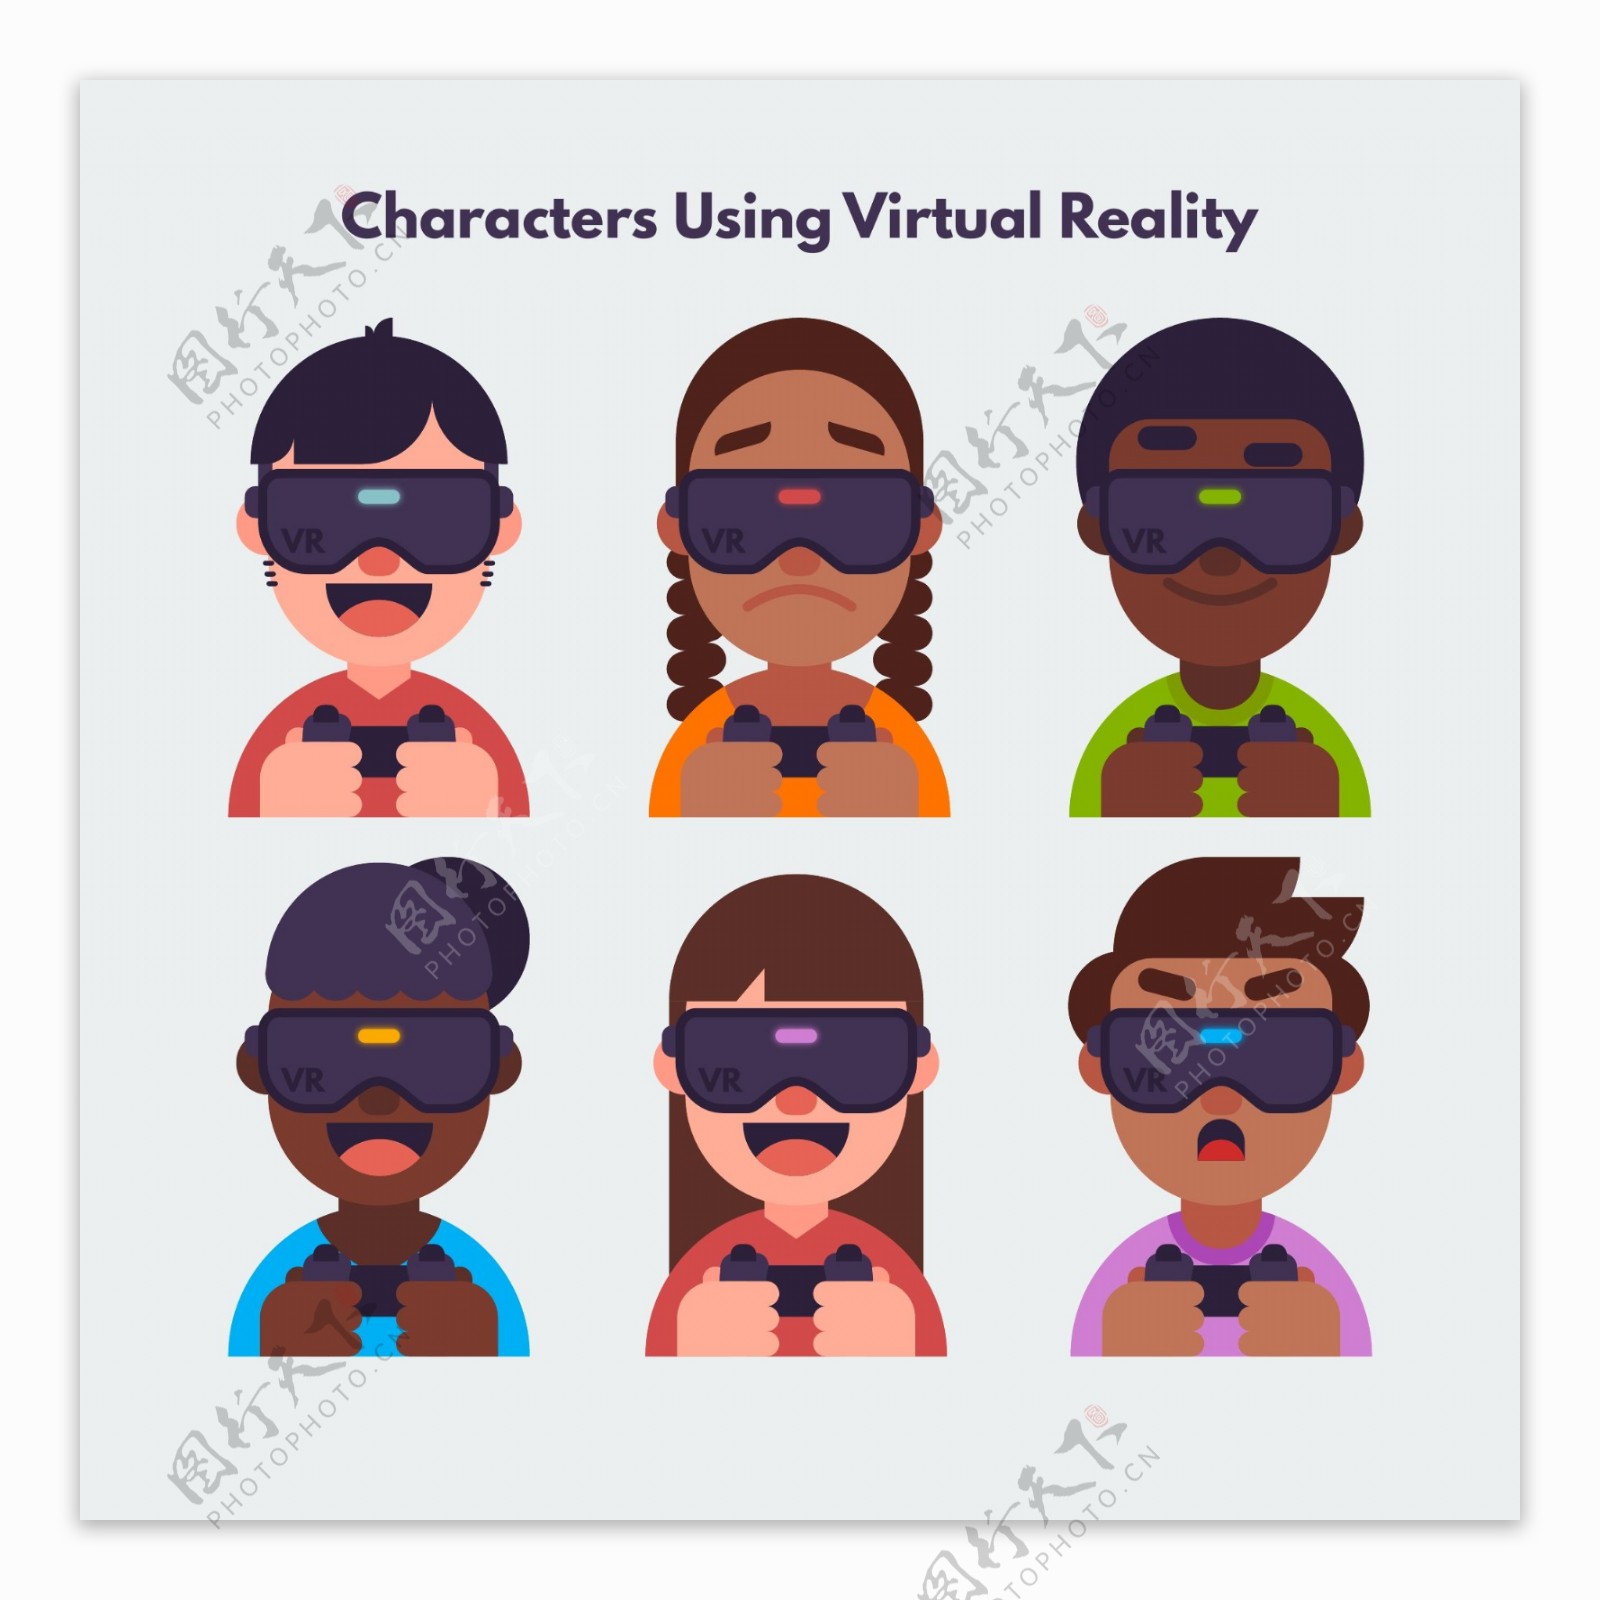 戴VR虚拟现实眼镜玩游戏